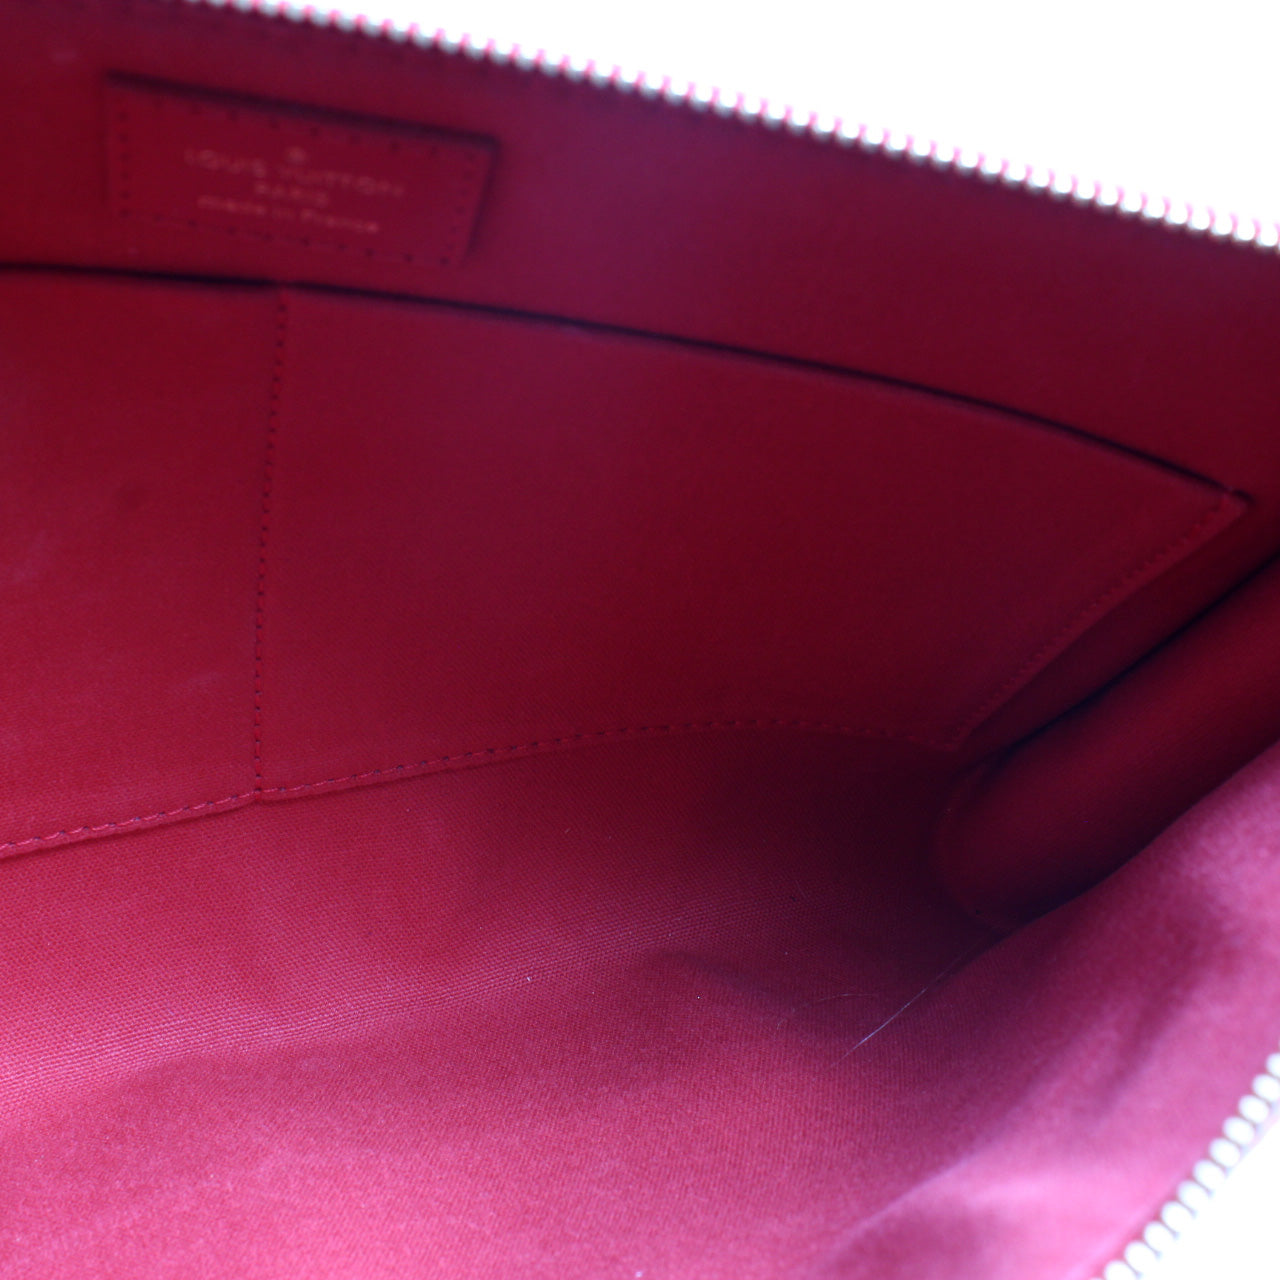 Mobil Bag Damier Couleur – Keeks Designer Handbags